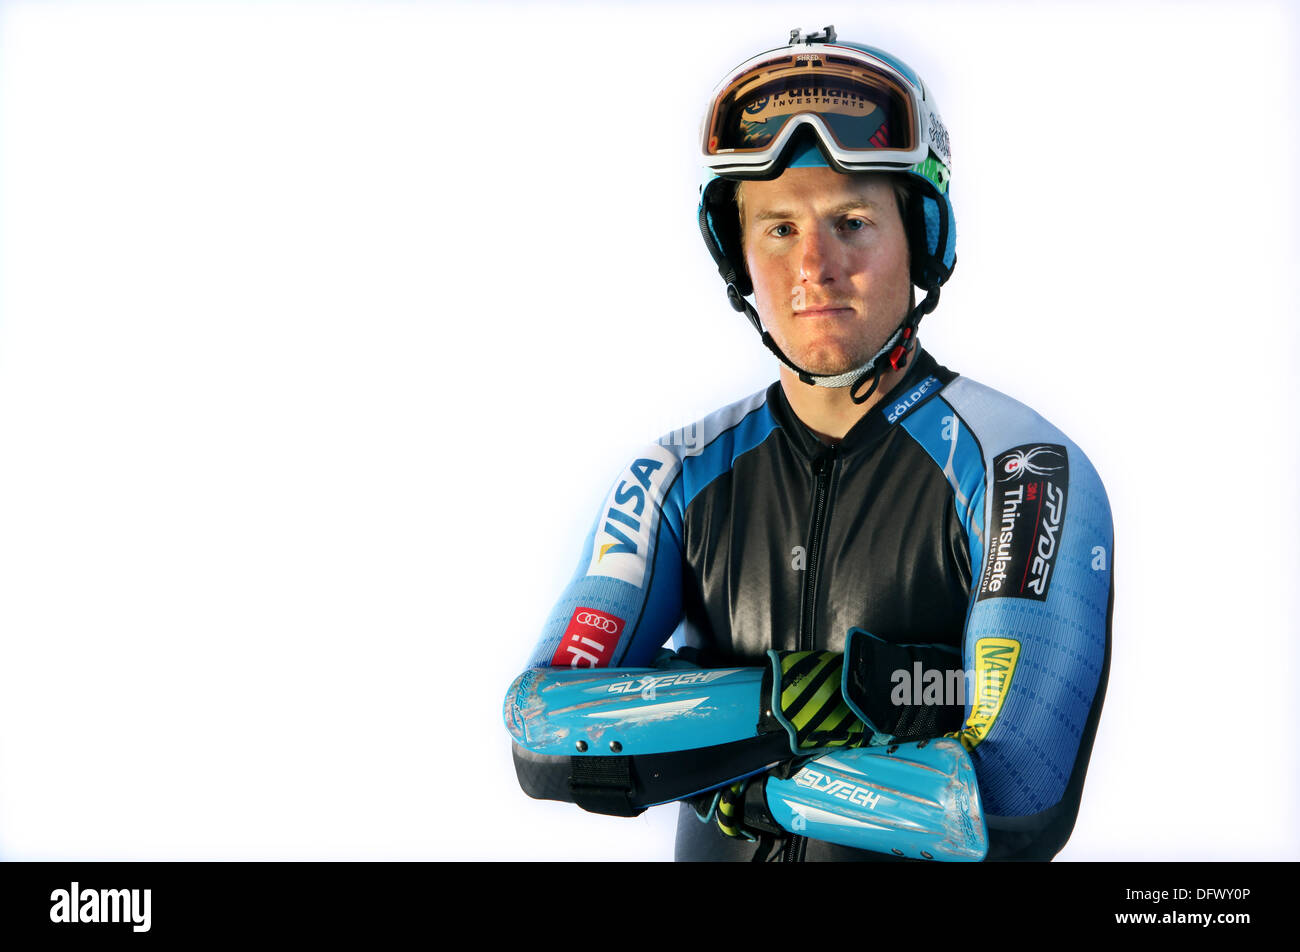 9 octobre 2013 - Park City, Utah, États-Unis - Ted Ligety, 29 de Park City, Utah - ski alpin. Sommet des médias Olympique USOC à Park City, Utah (Image Crédit : © Erich Schlegel/ZUMAPRESS.com) Banque D'Images